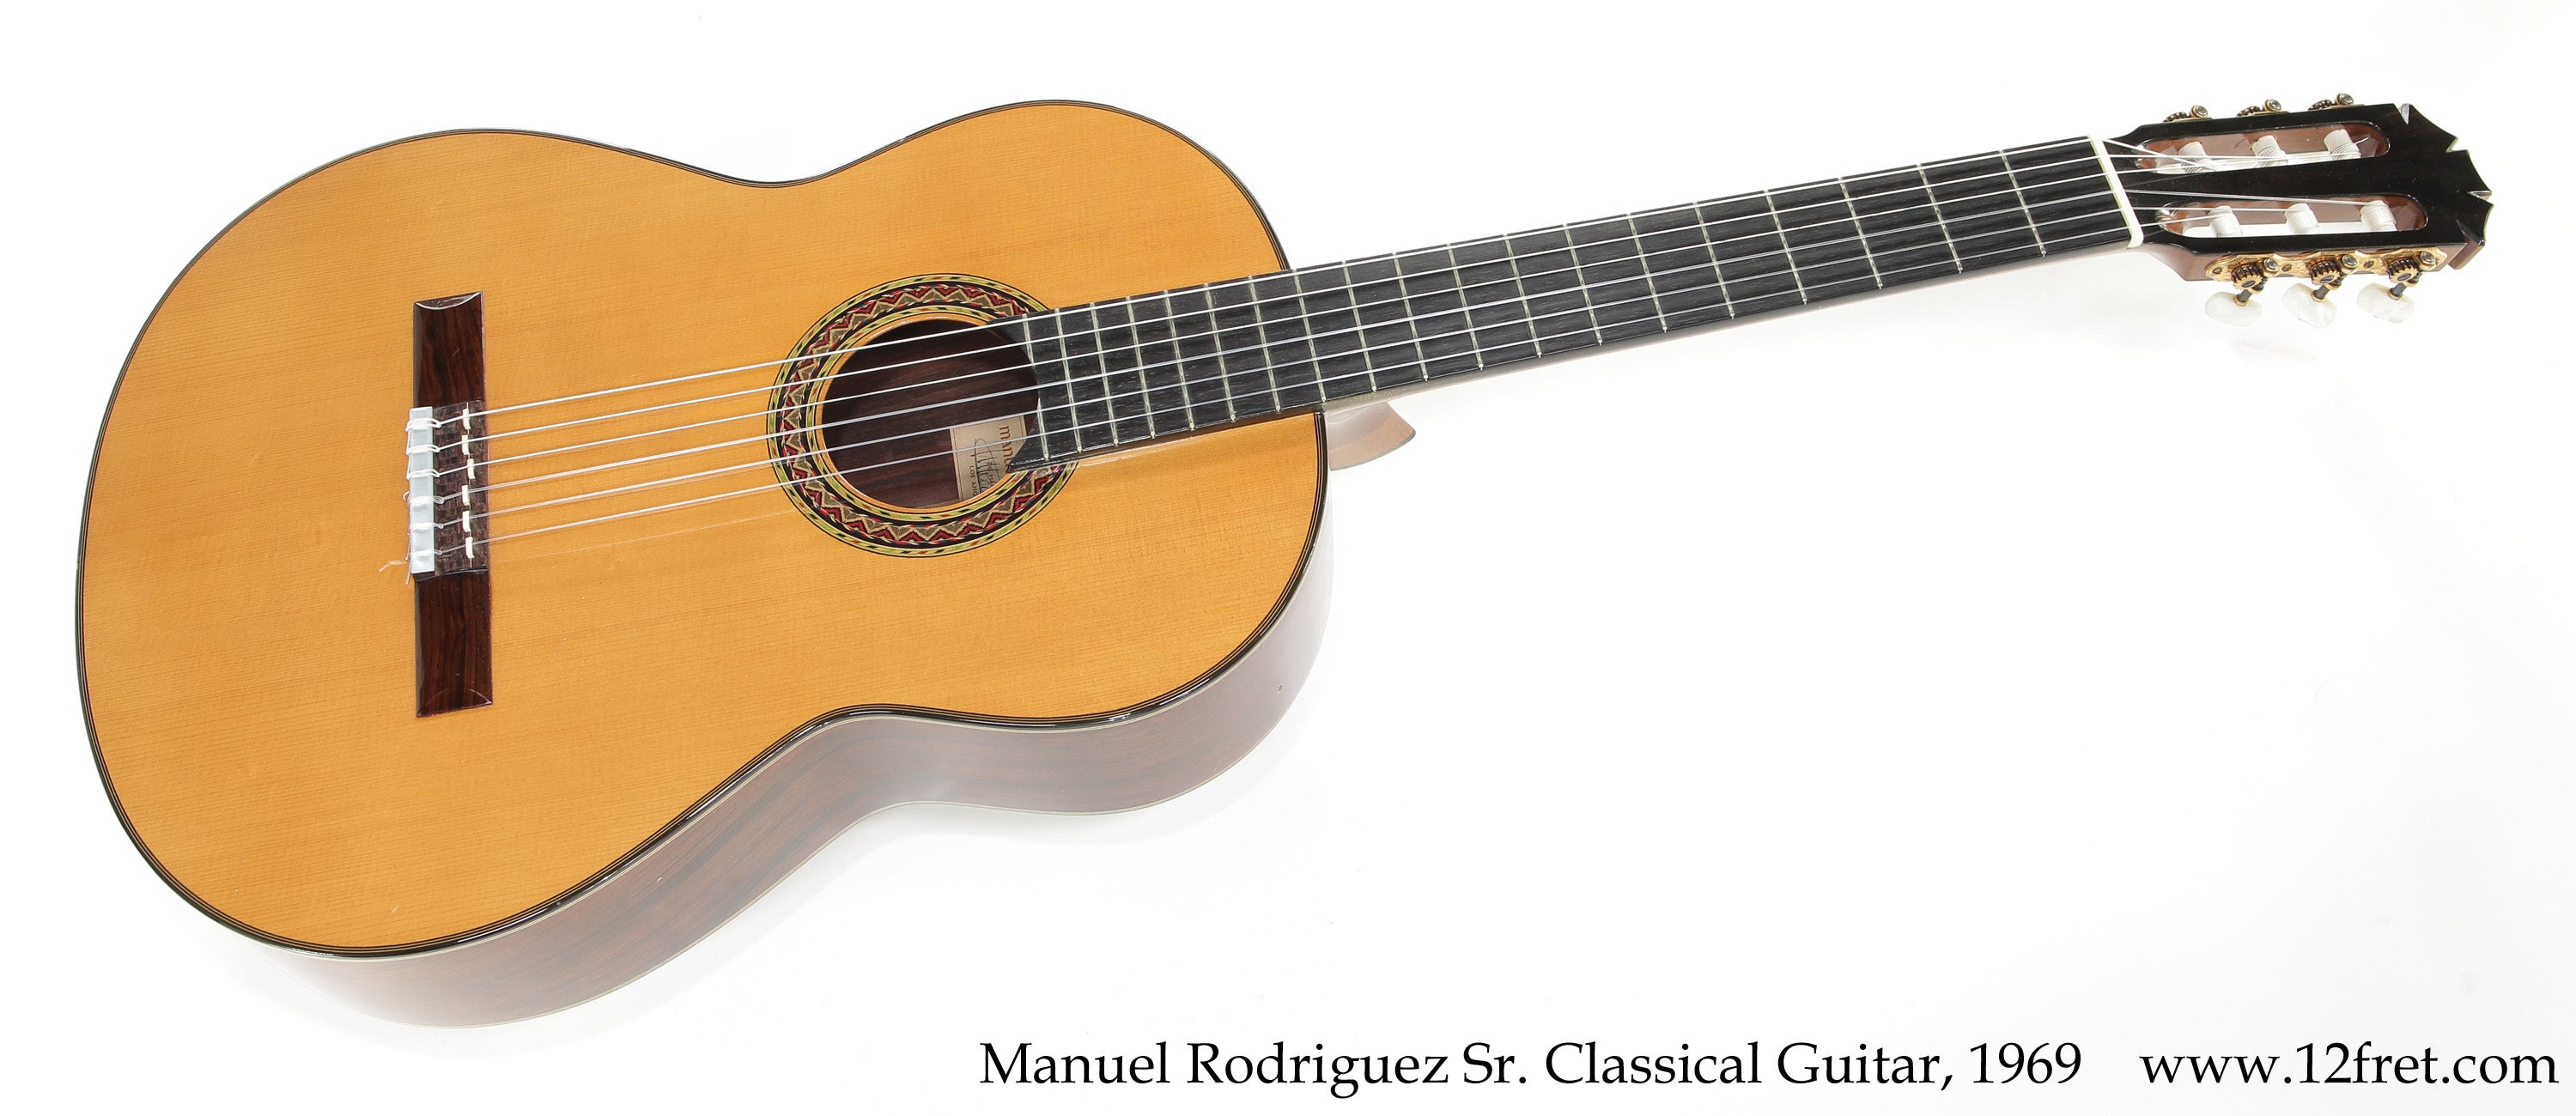 Manuel Rodriguez Sr. Classical Guitar, 1969  - The Twelfth Fret